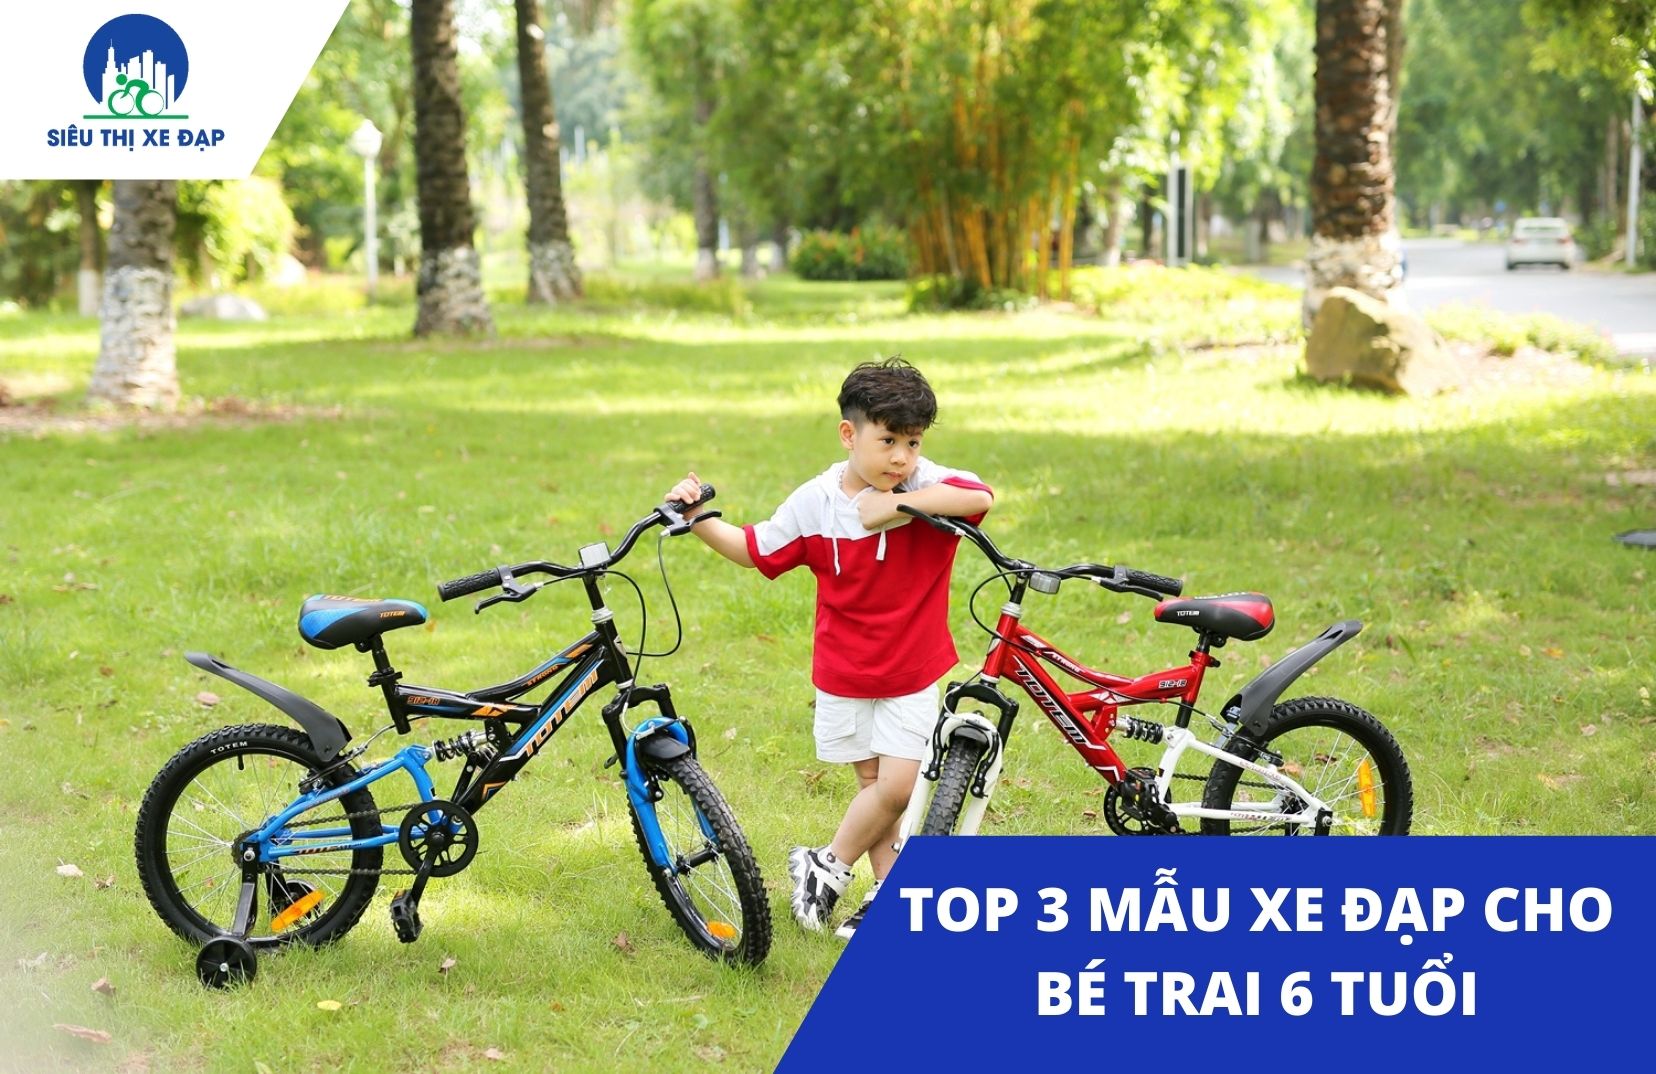 3 mẫu xe đạp cho bé trai 6 tuổi hot nhất hiện nay